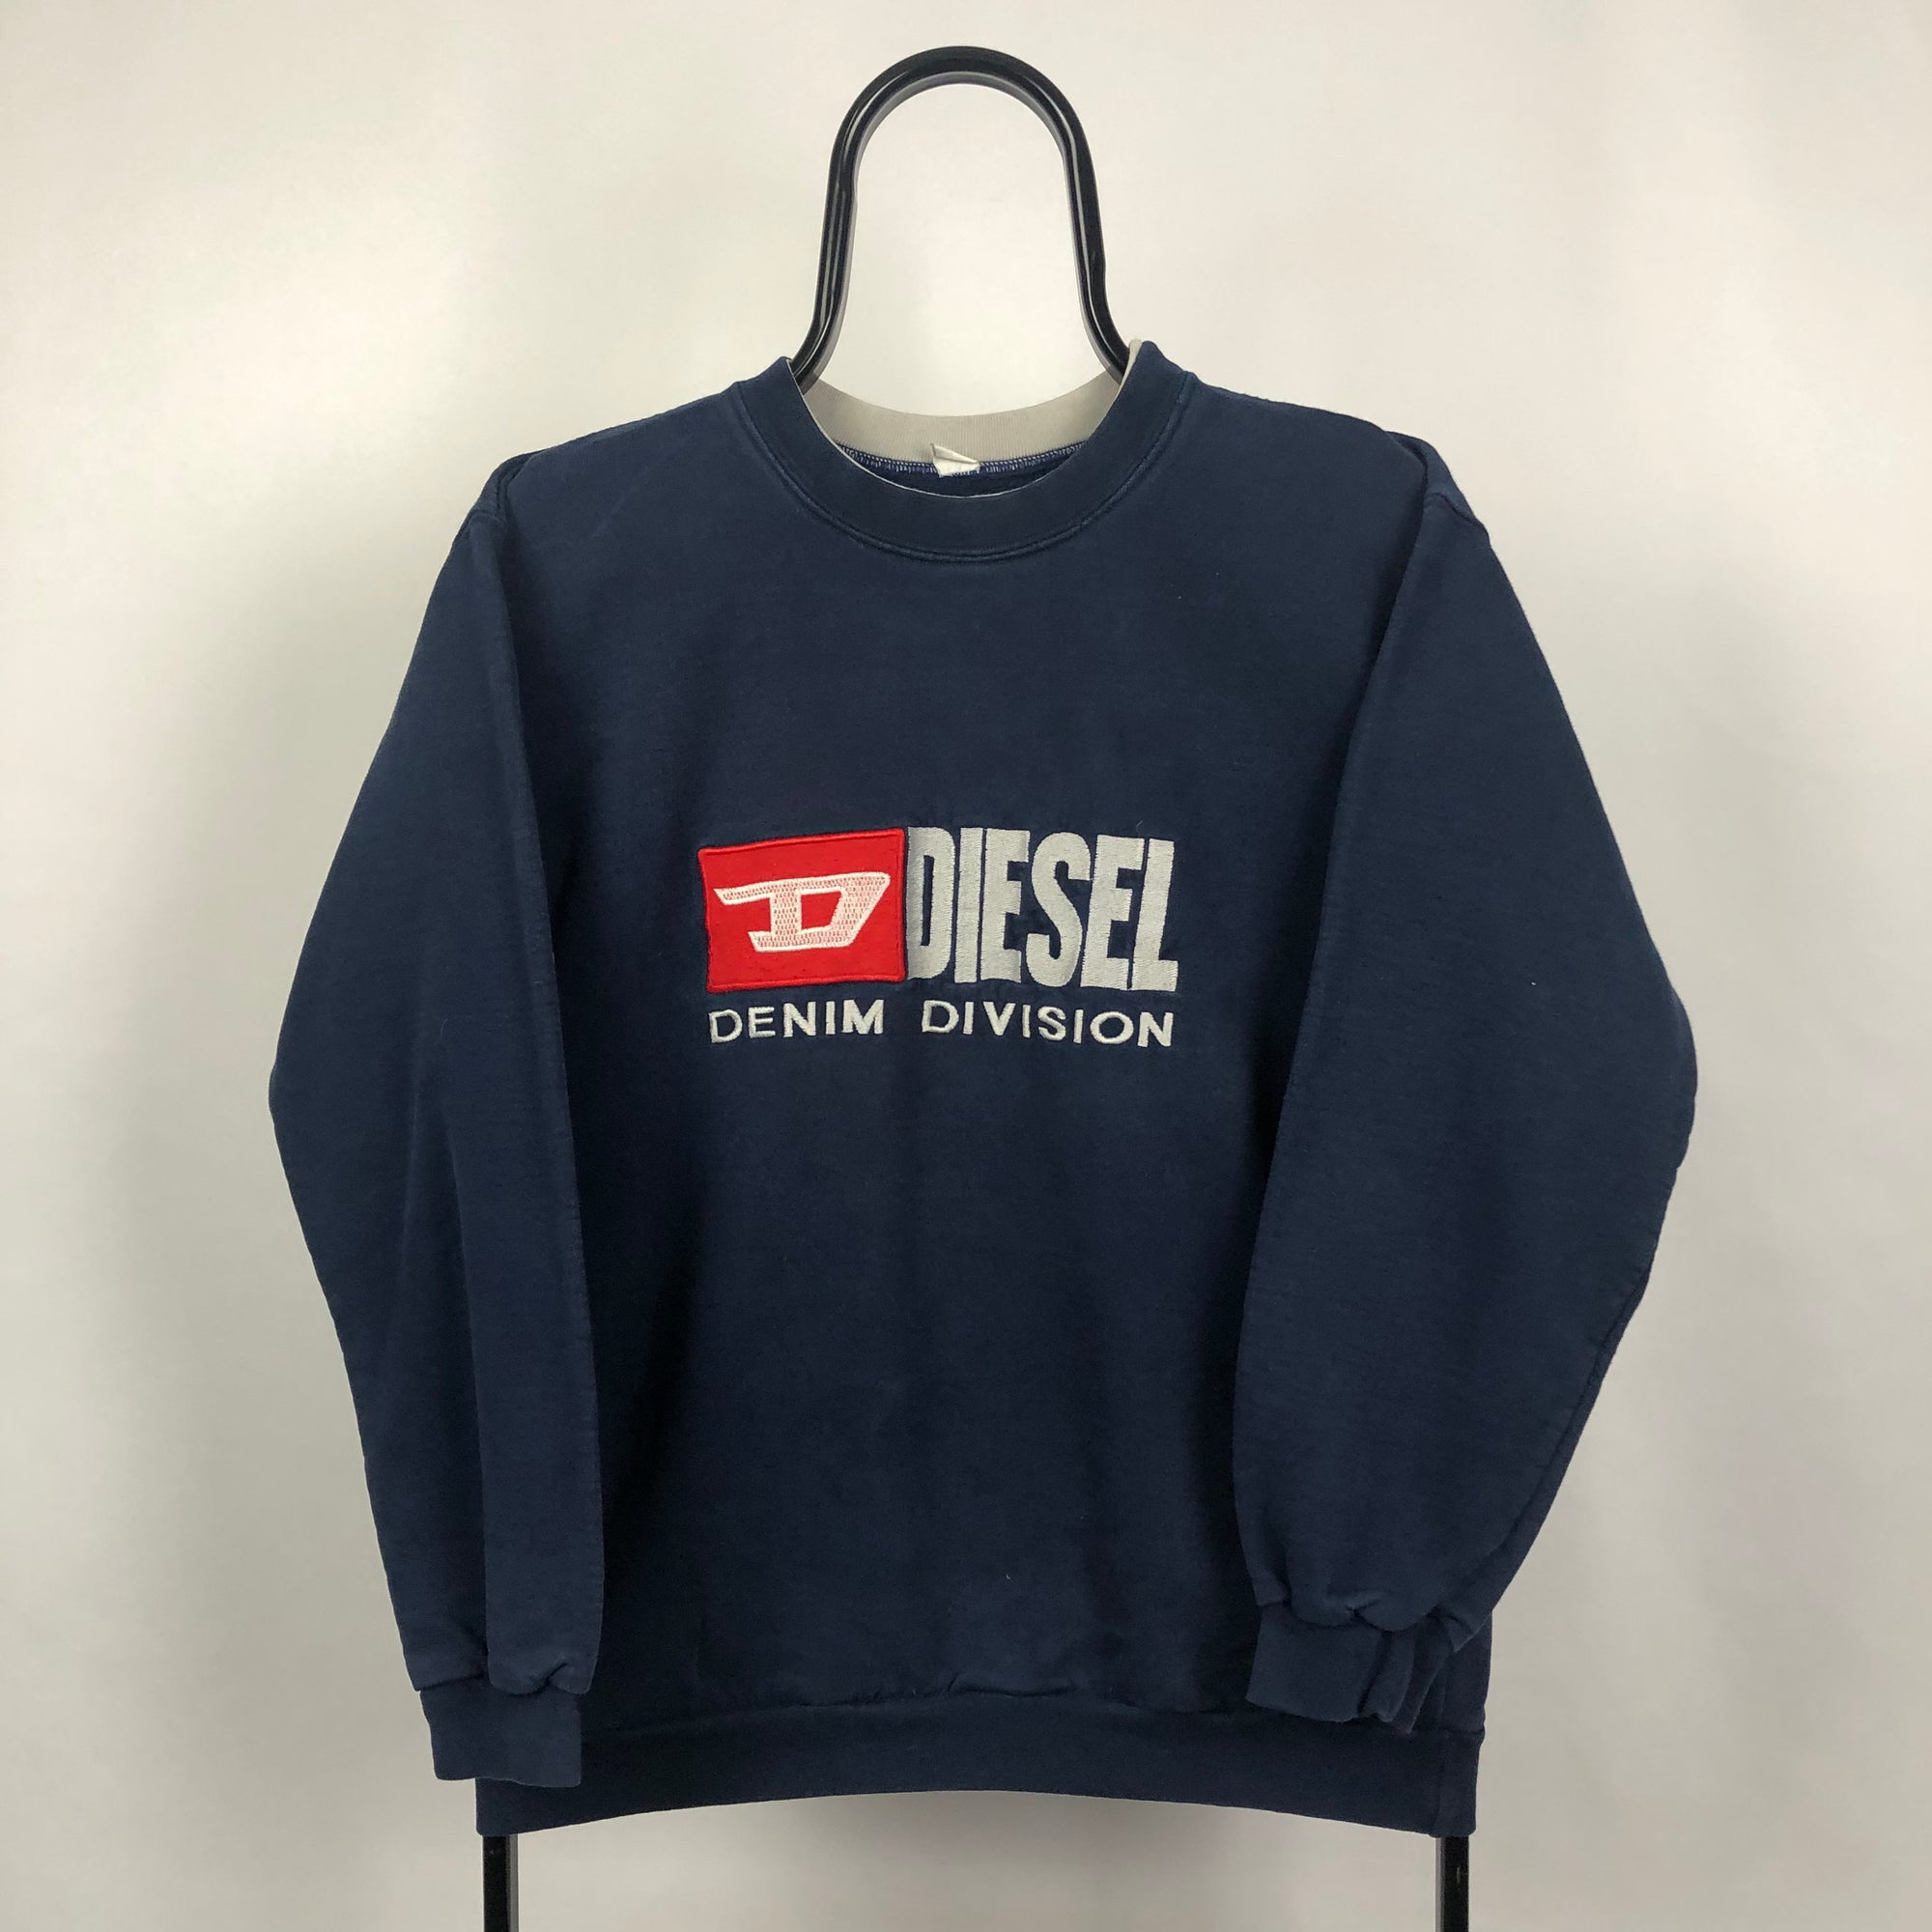 Diesel Spellout Sweatshirt - Women's Small